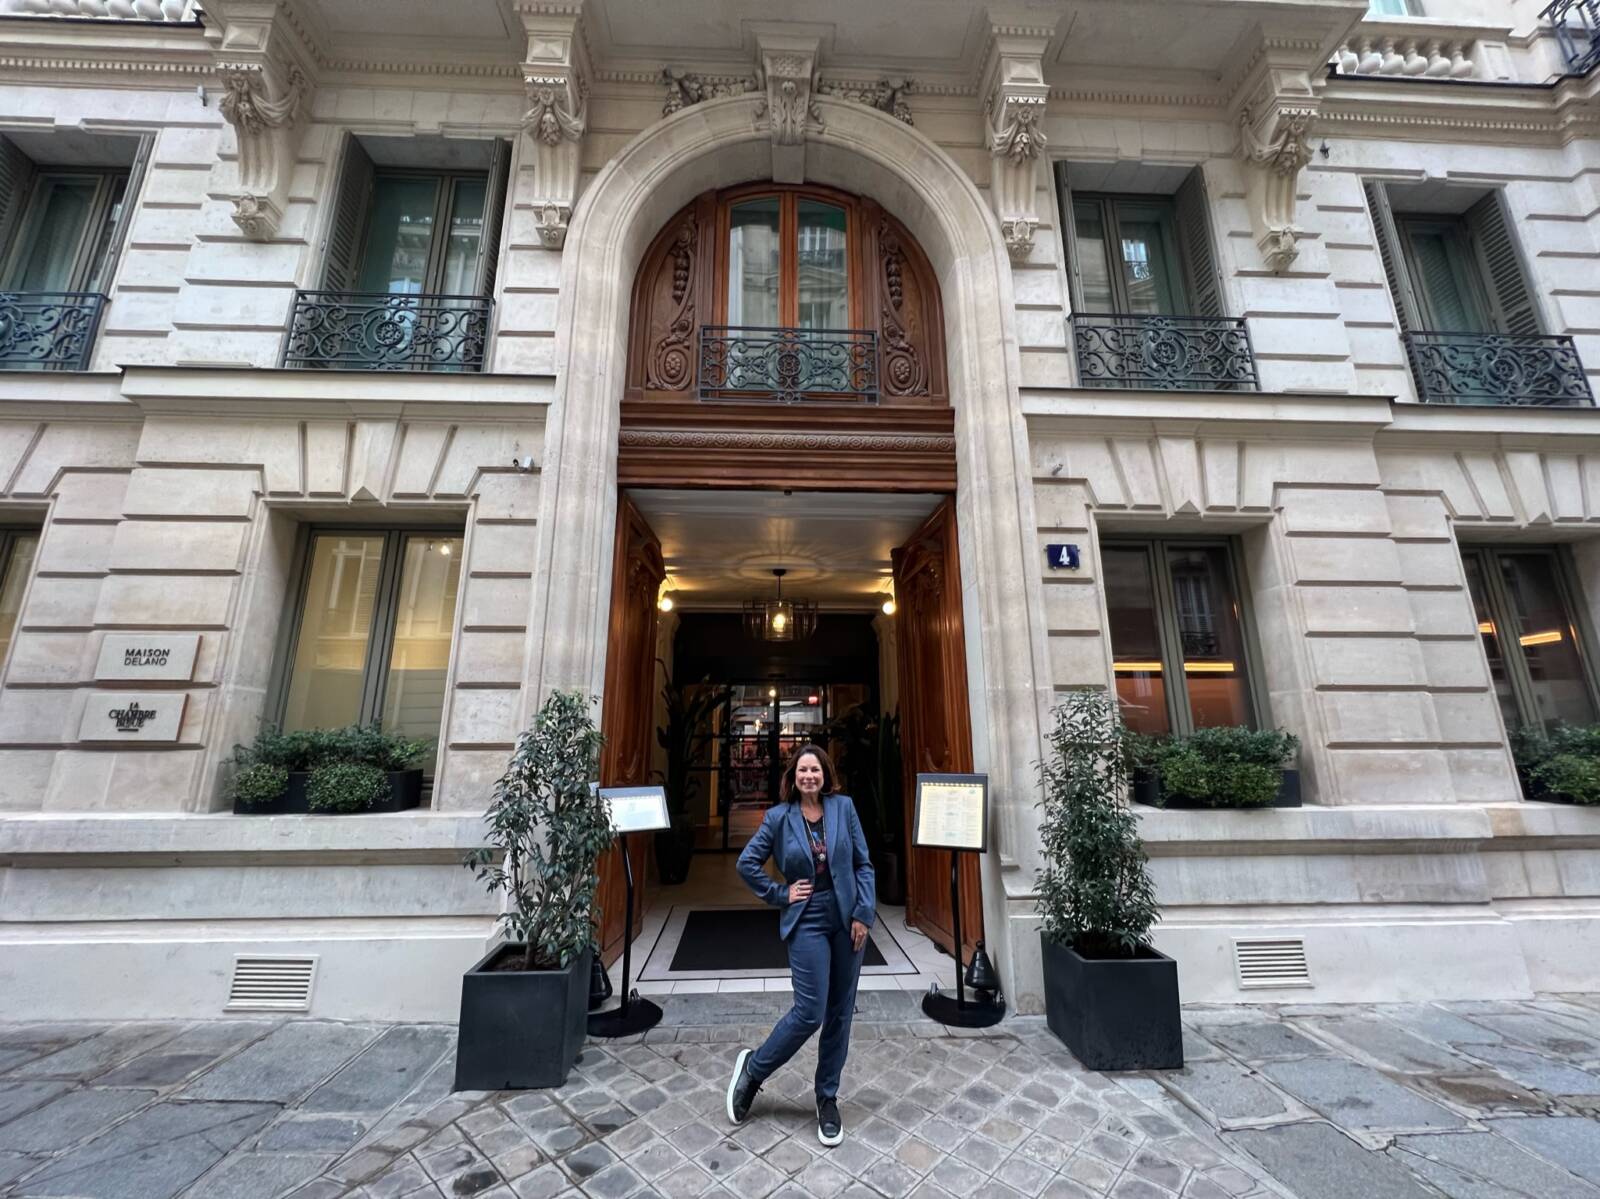 Maison Delano: hotel boutique na região da St Honoré, em Paris